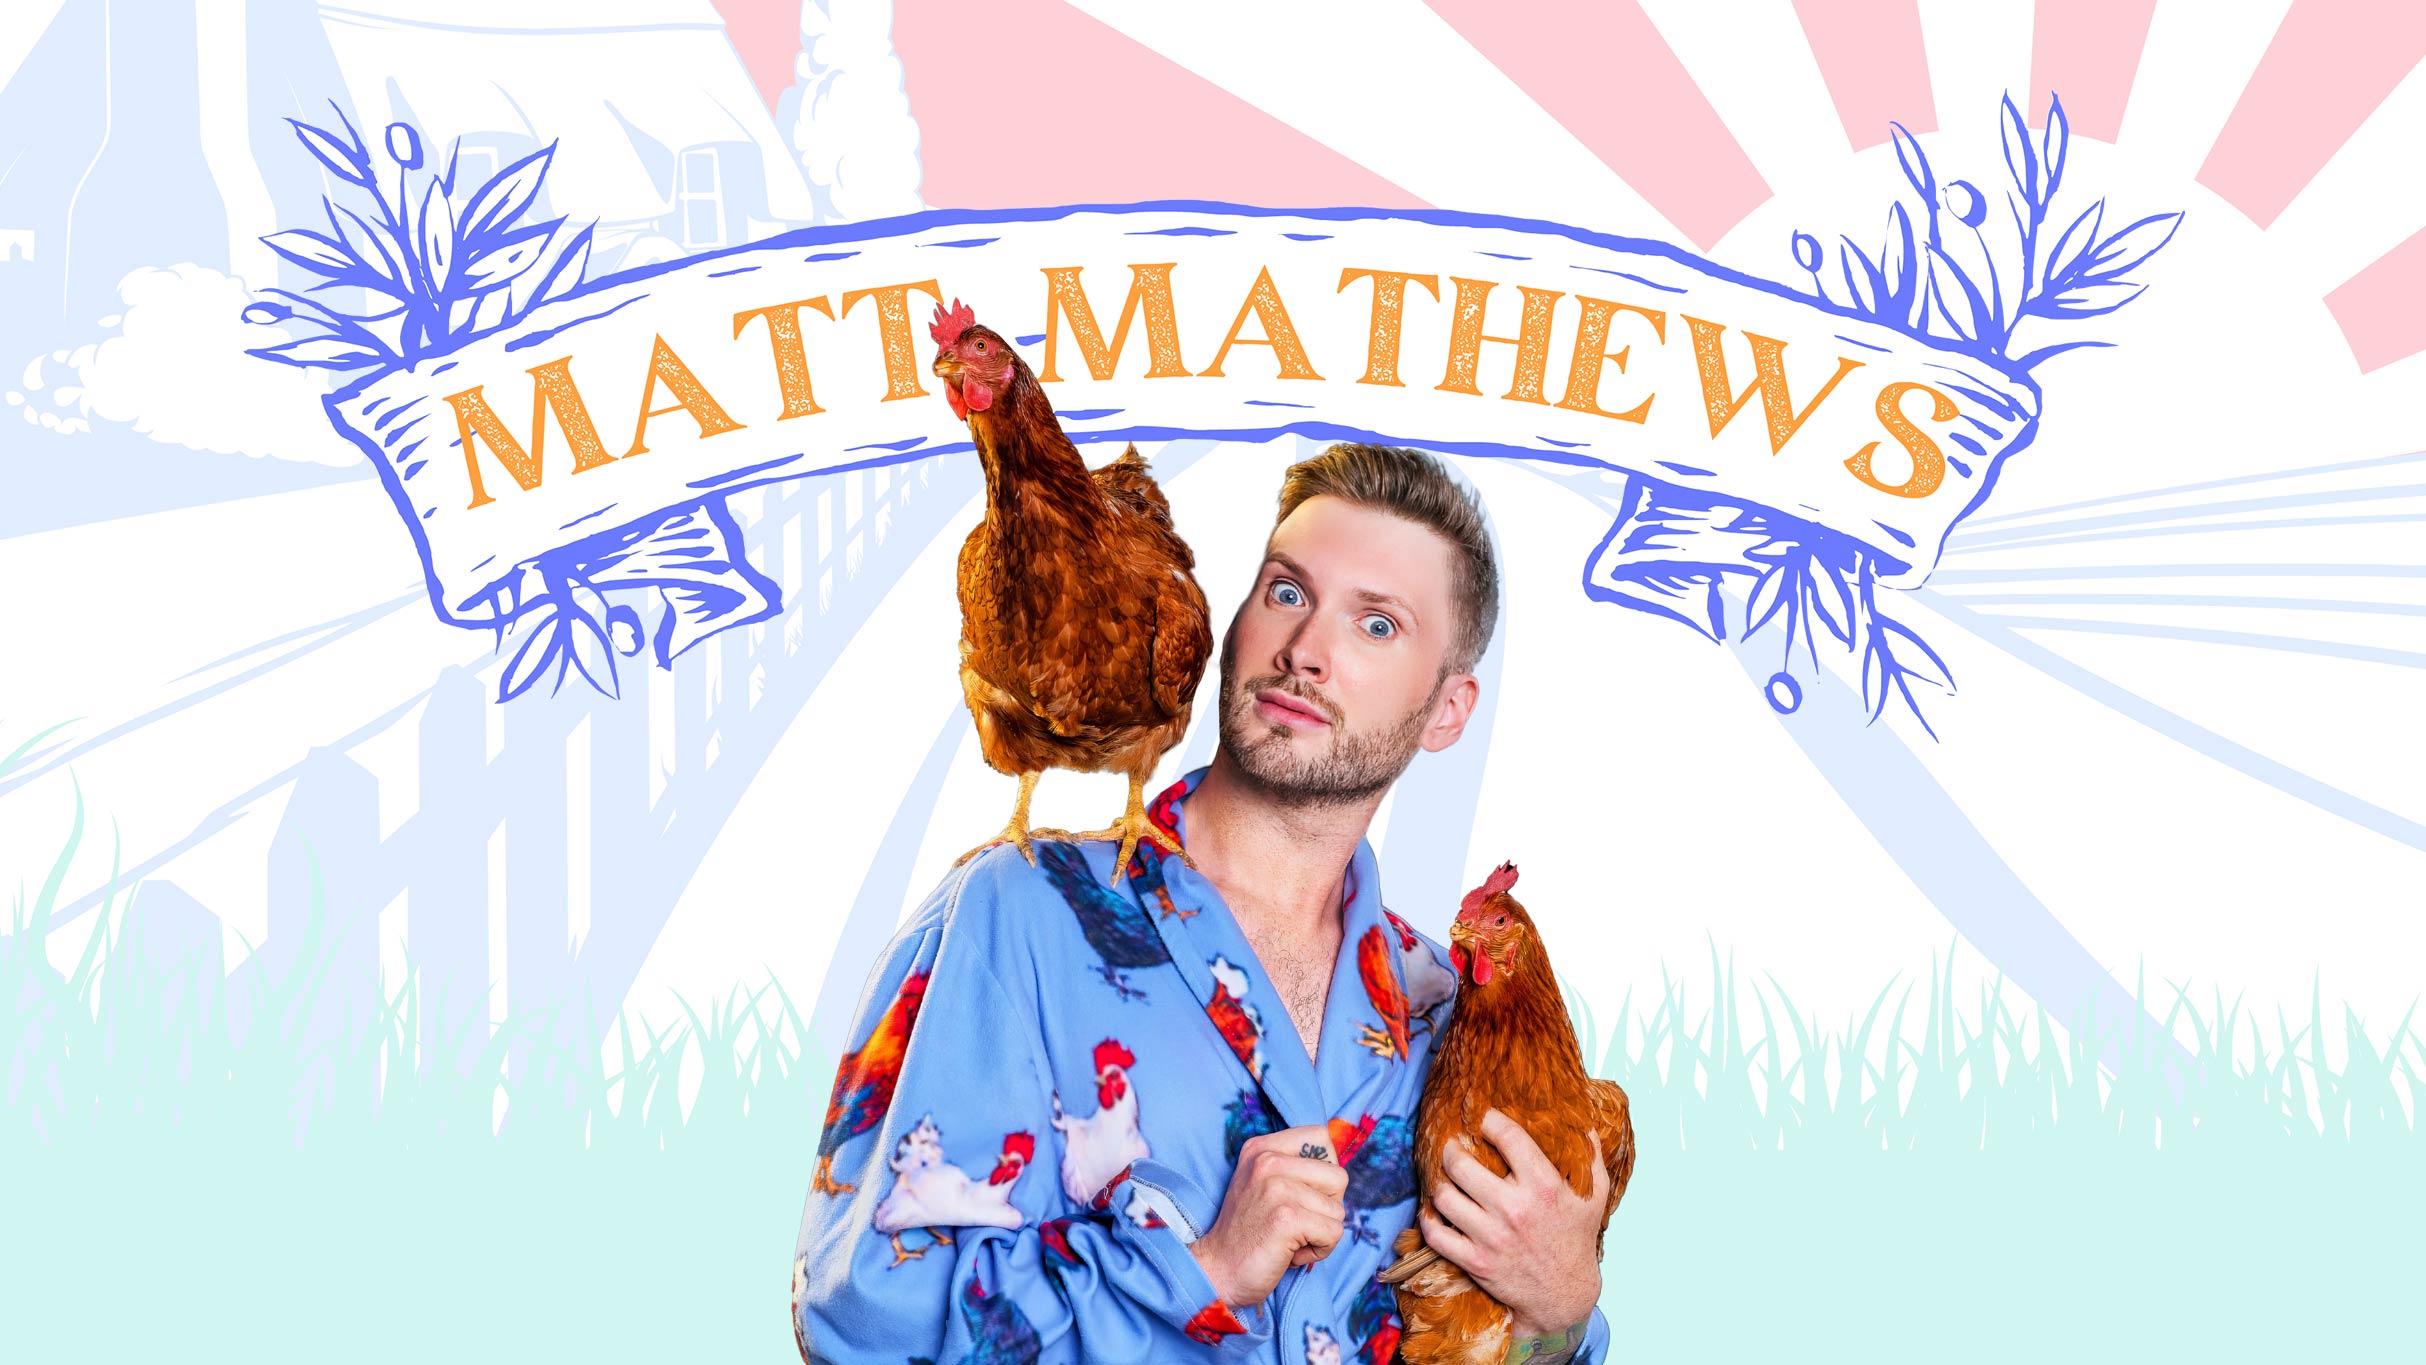 Matt Mathews Presents When That Thang Get ta' Thangn' Tour